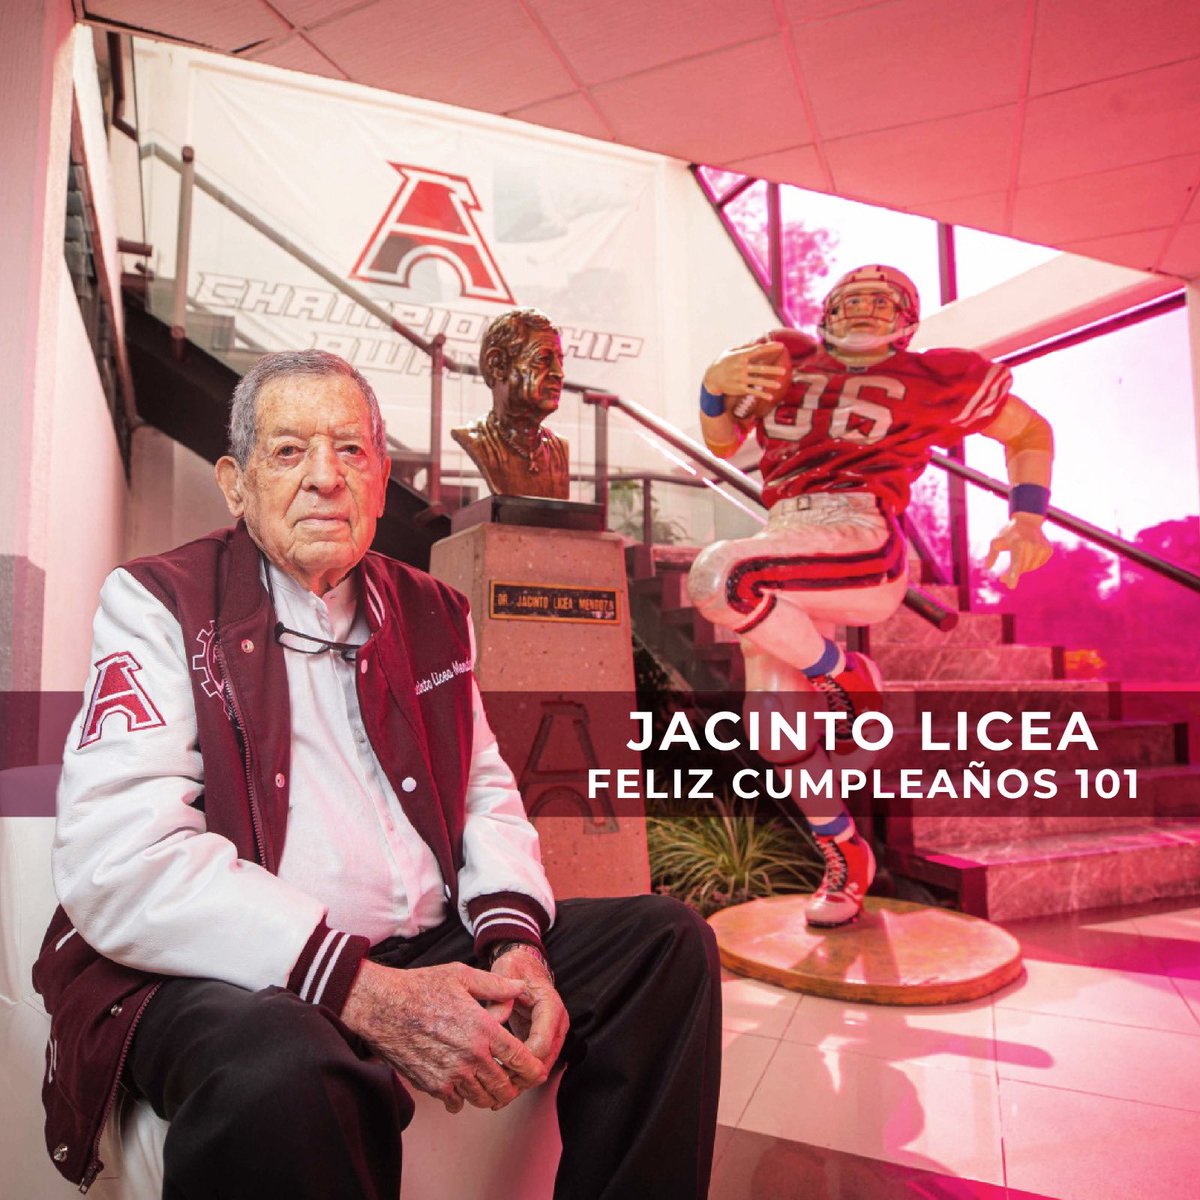 Hoy celebramos con mucho cariño y respeto a una leyenda del equipo de @AguilasIPN, nuestro querido Jacinto Licea que cumple nada mas y nada menos que 101 años de vida, y en el #IPN no podemos mas que estar agradecidos y orgullosos por los triunfos y jugadores valiosos que le dio